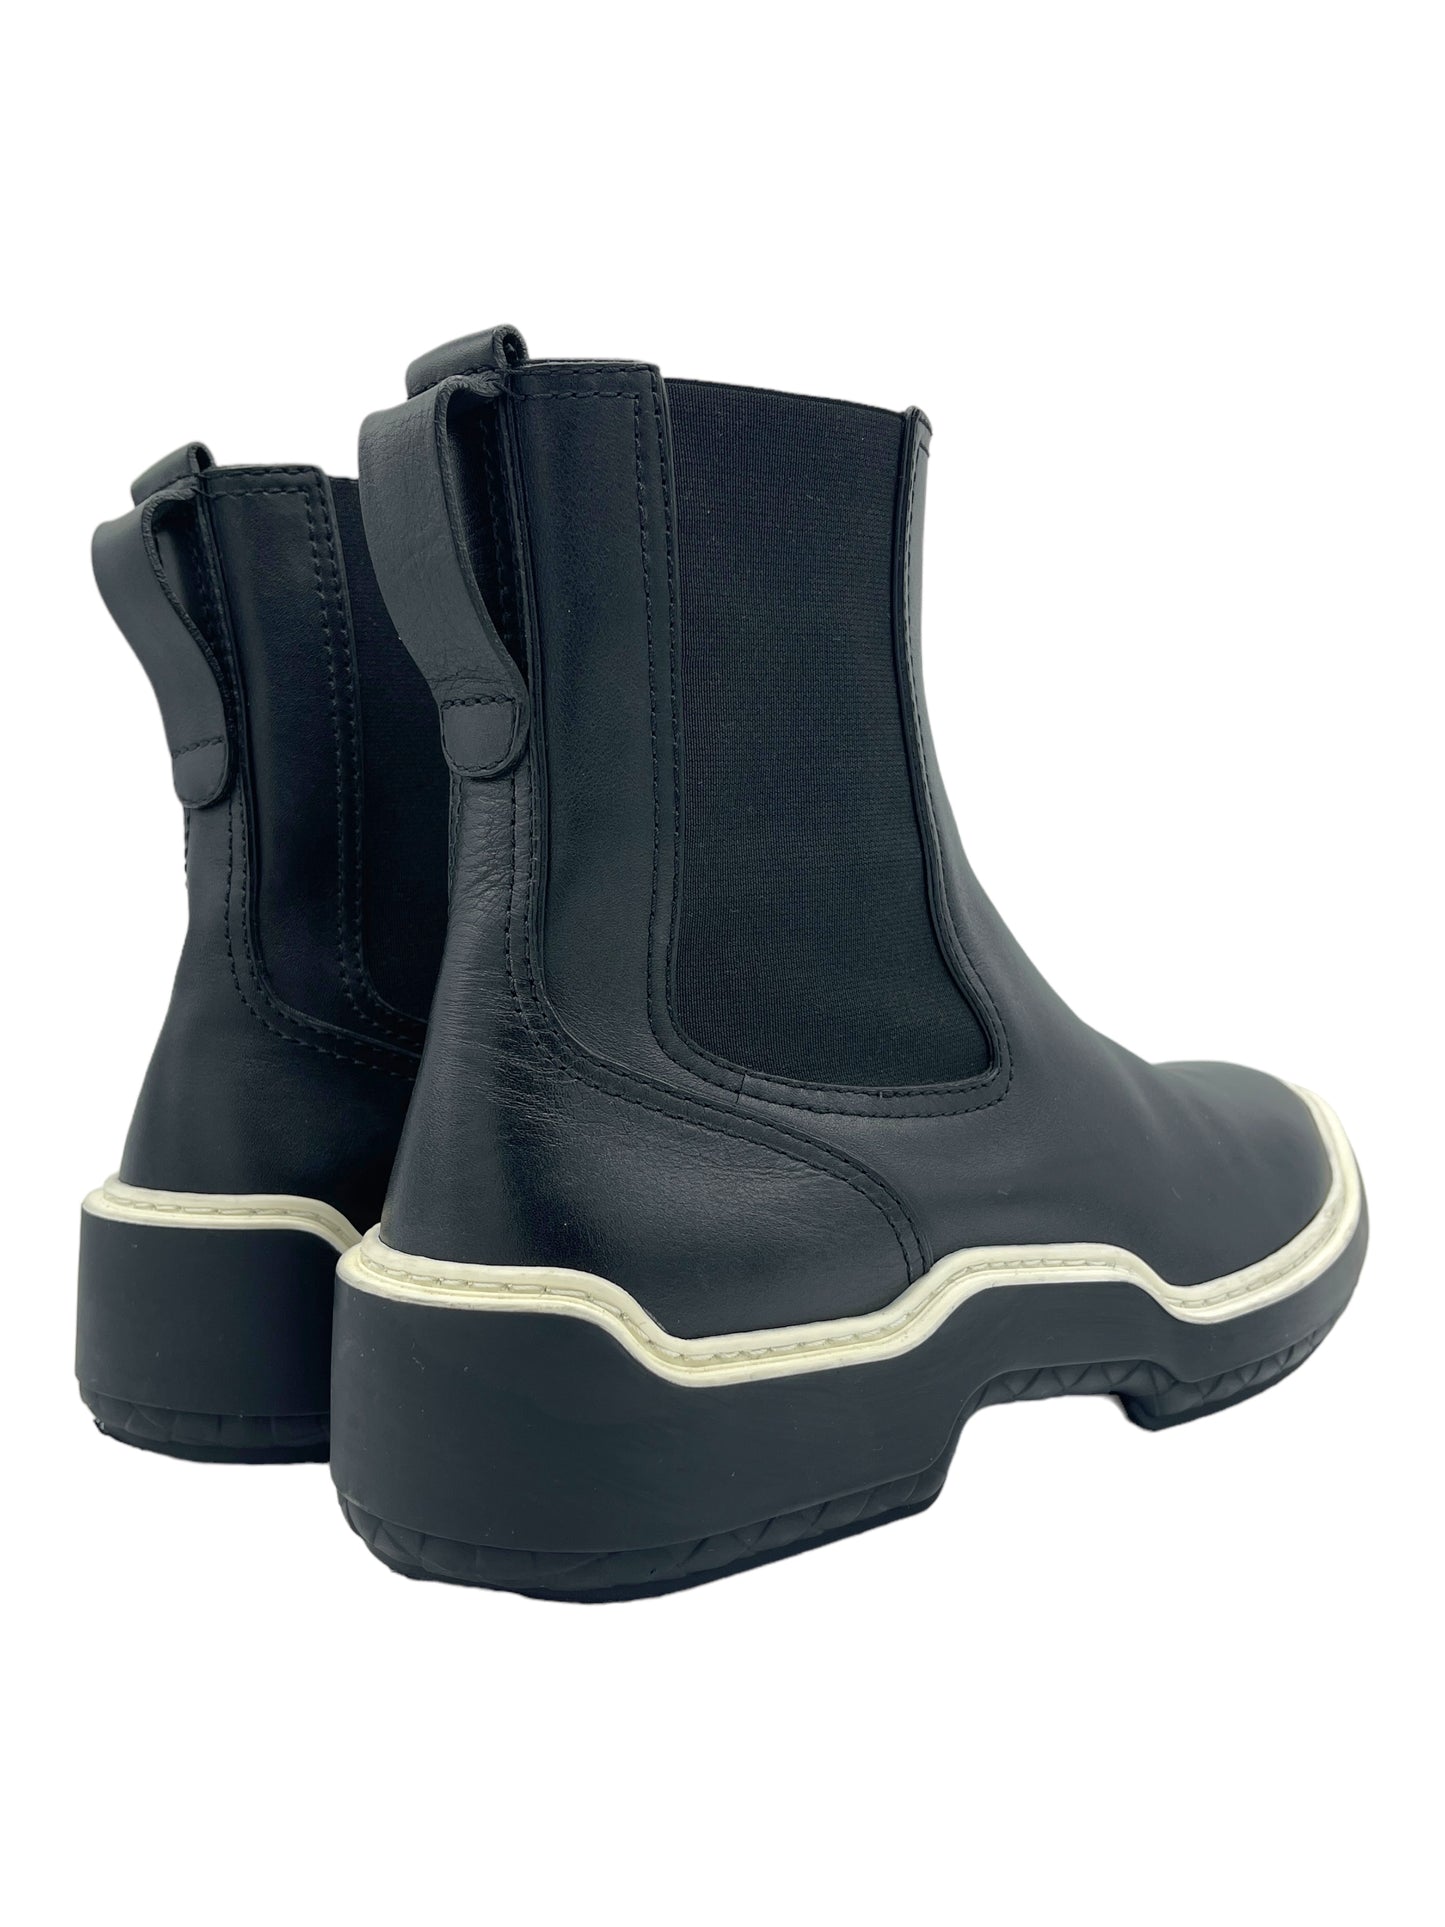 Bottega Veneta Black & White Leather Chelsea Boots 10 M / 11.5 W